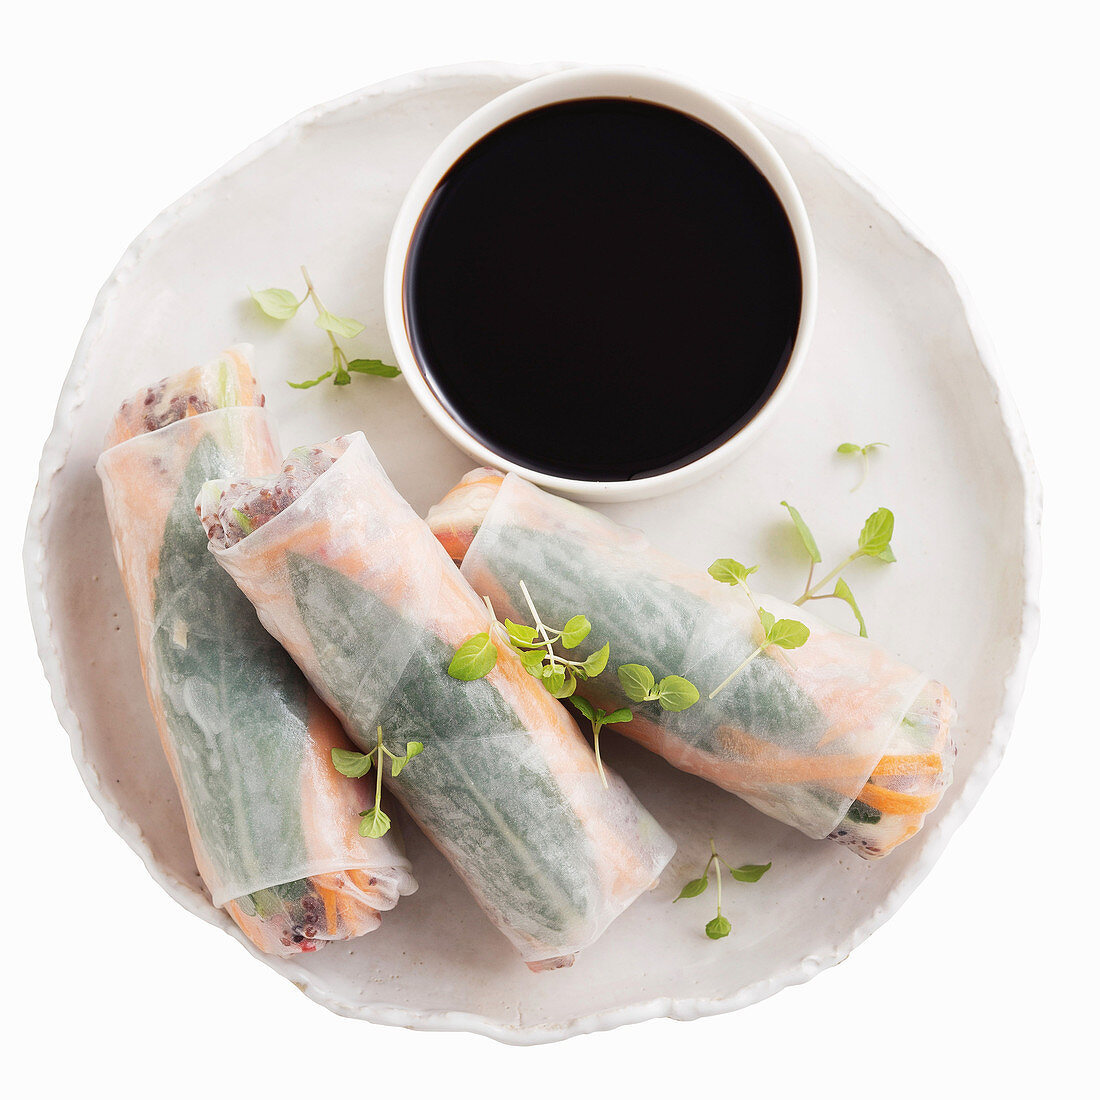 Reispapierrröllchen mit Lachs, Quinoa und Avocado (Vietnam)